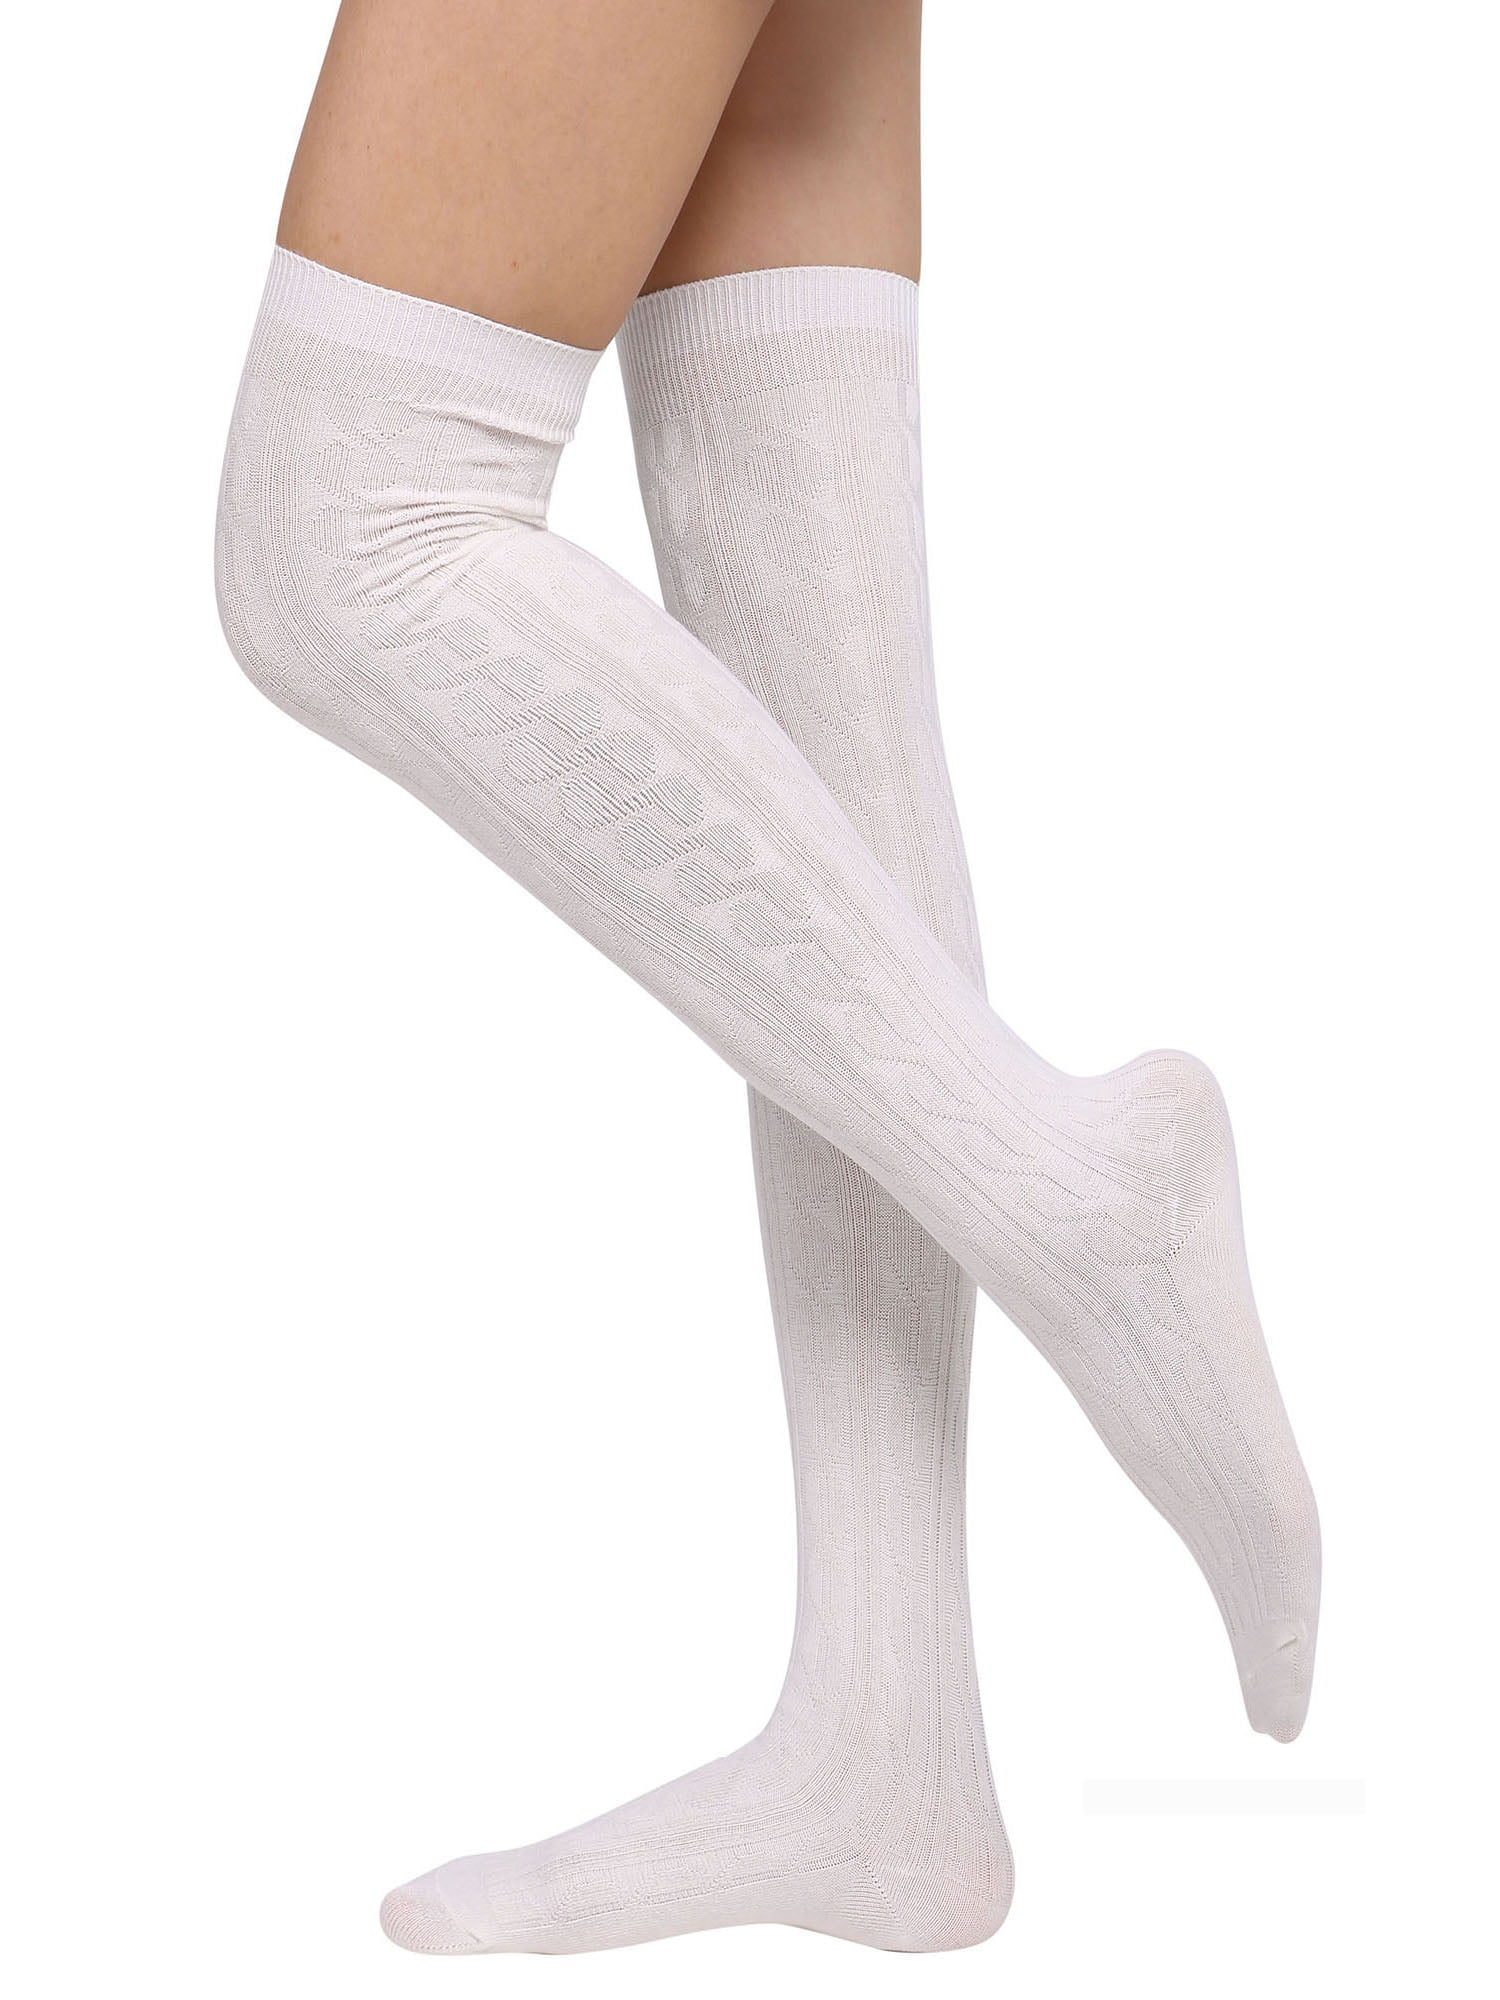 High Elasticity Girl Cotton Knee High Socks Uniform Chemical Test Women Tube Socks